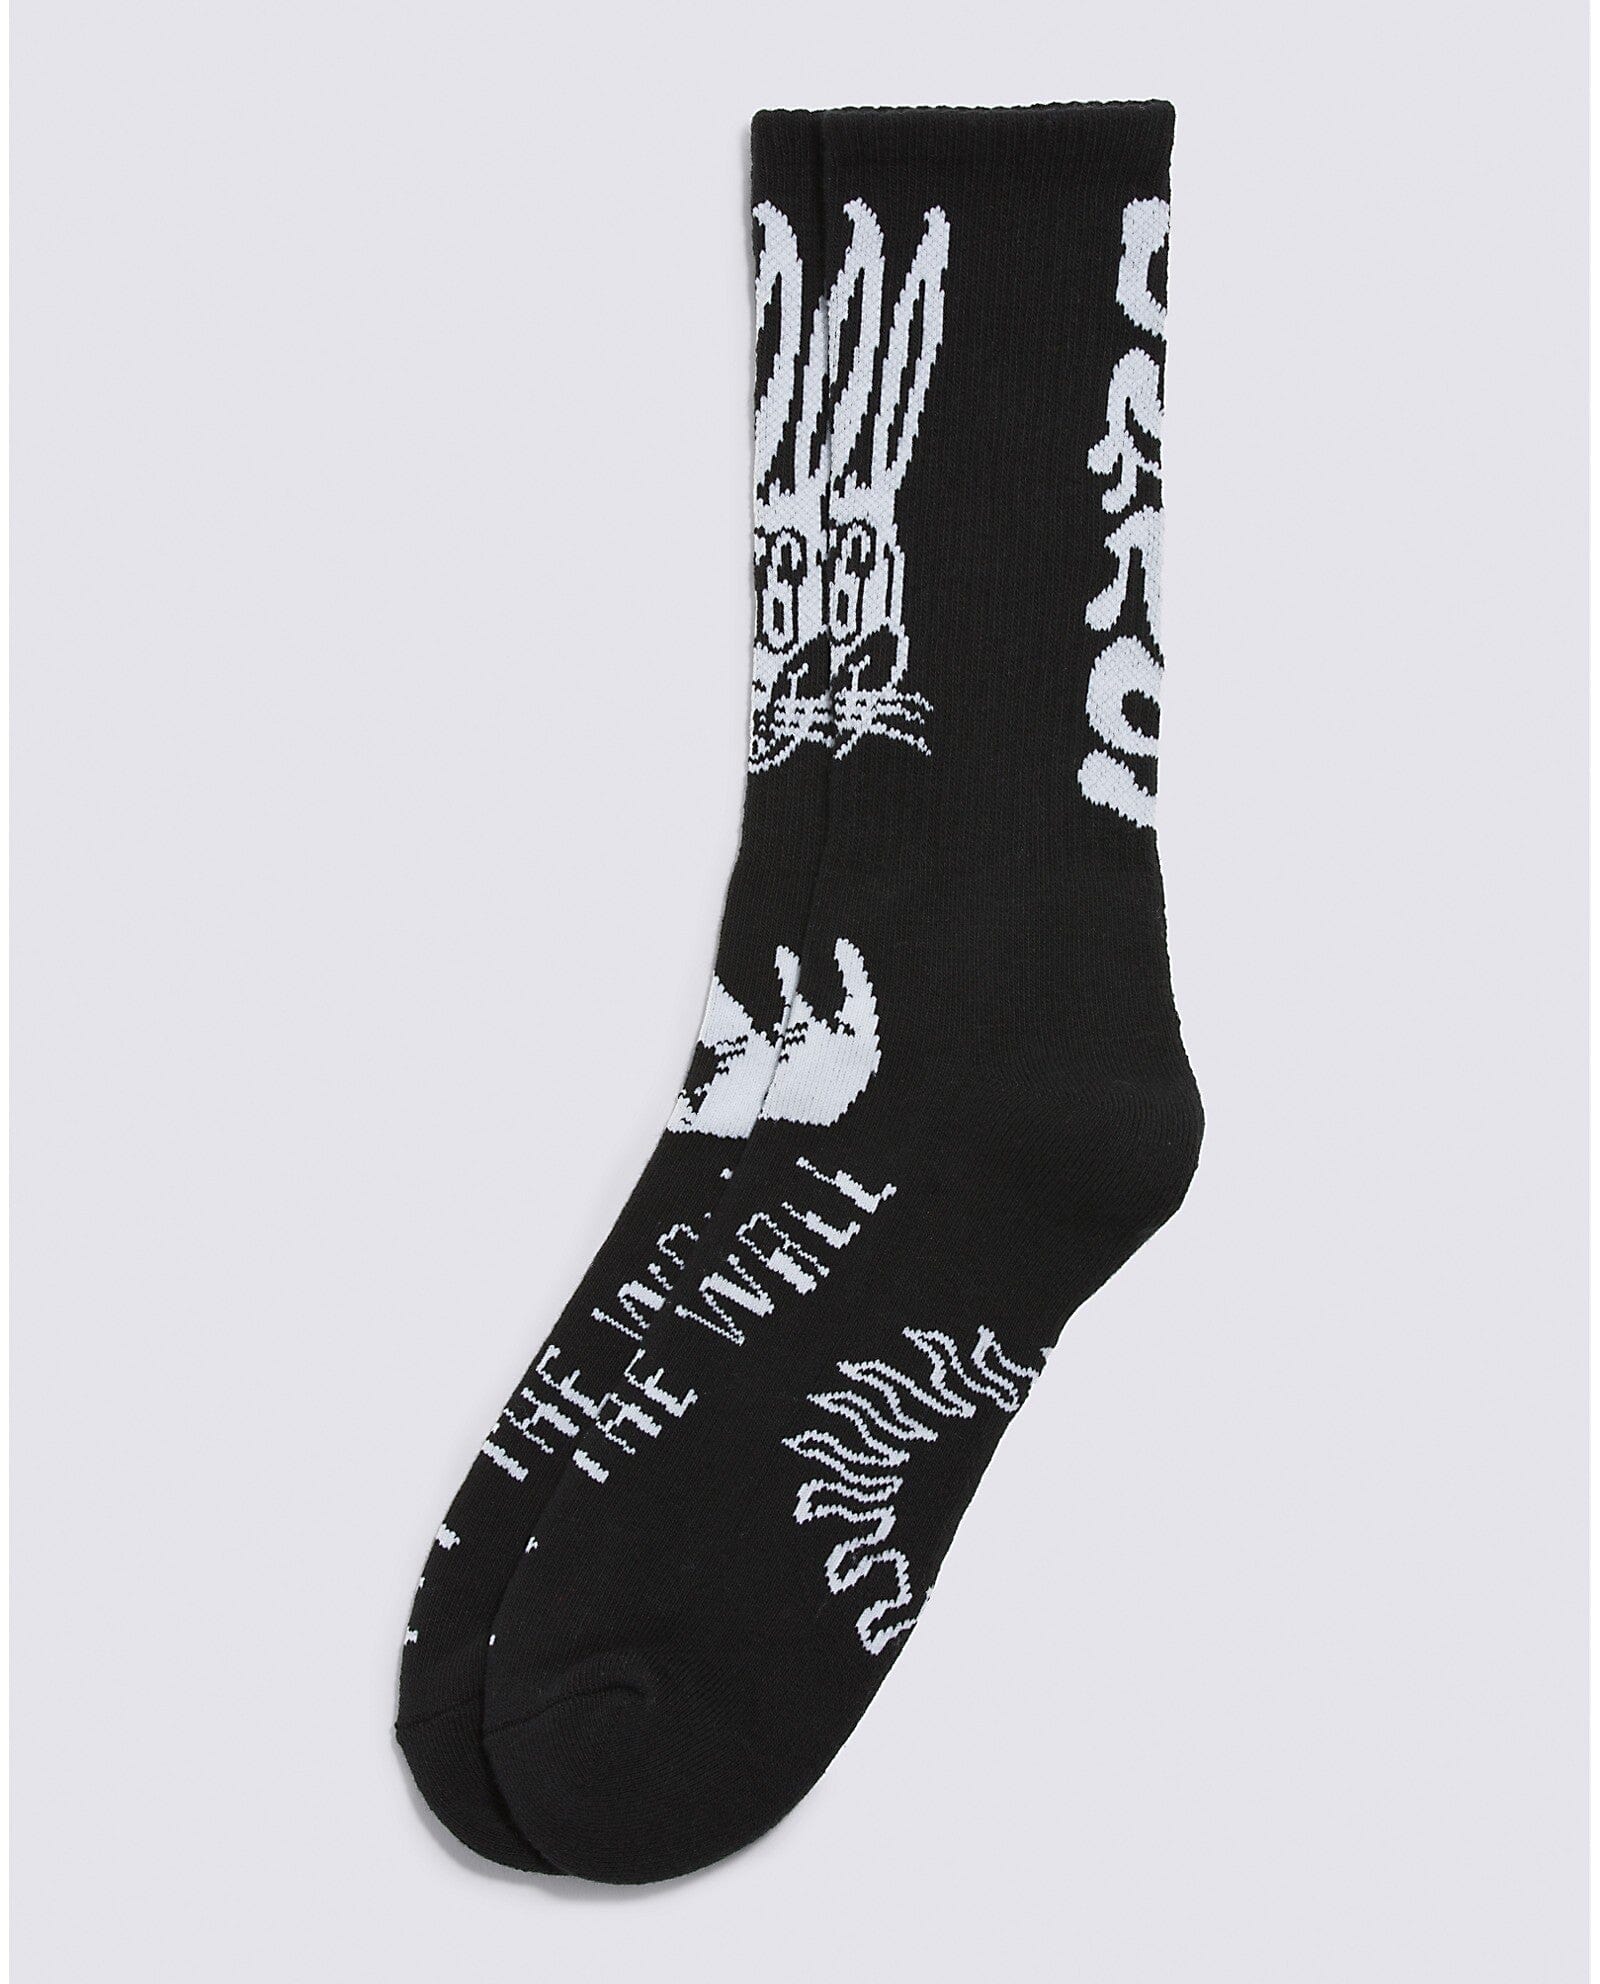 VANS Whammy Crew Sock Black Men's Socks Vans 